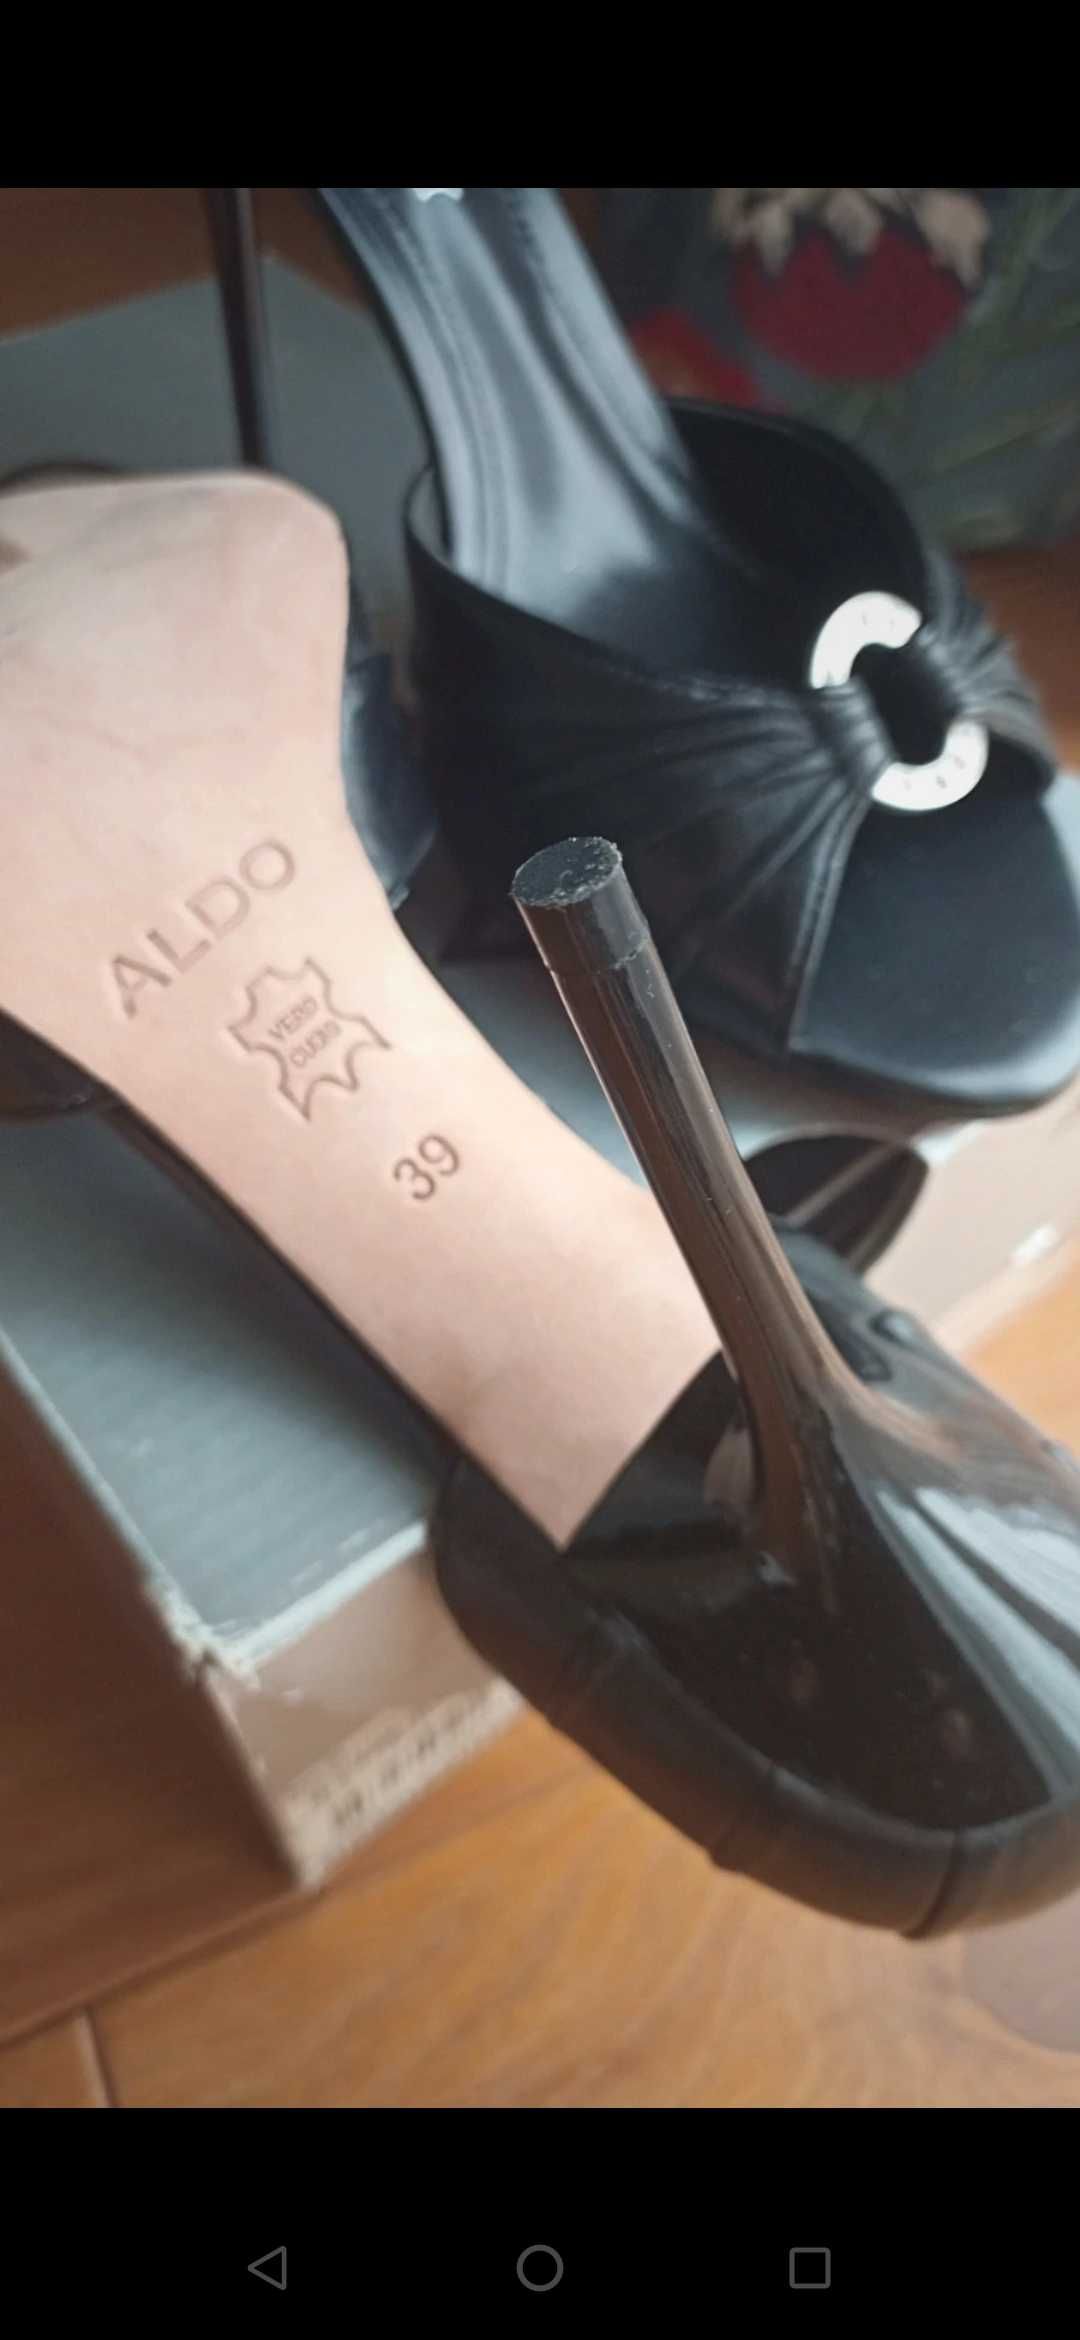 Aldo szpilki skóra r. 39